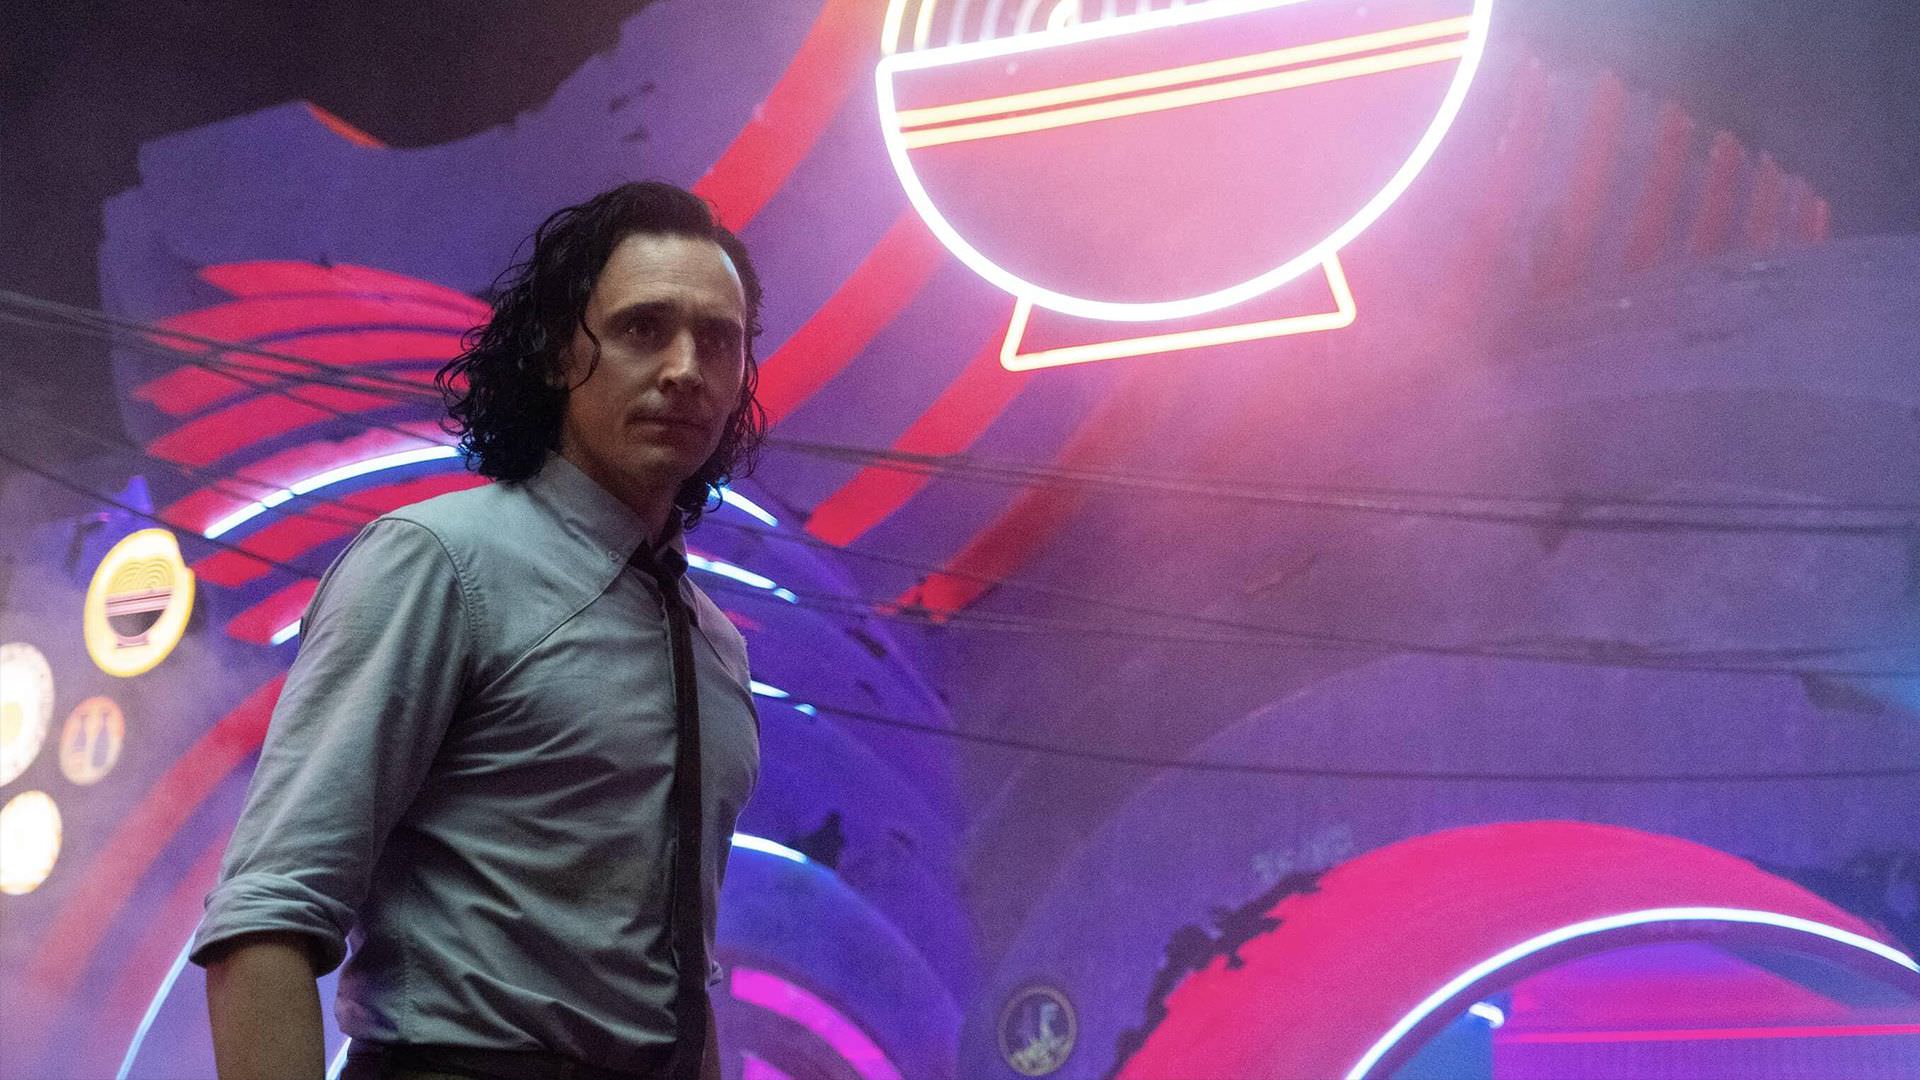 تام هیدلستون در نقش لوکی در حال فرار در شهر در قسمت سوم سریال Loki